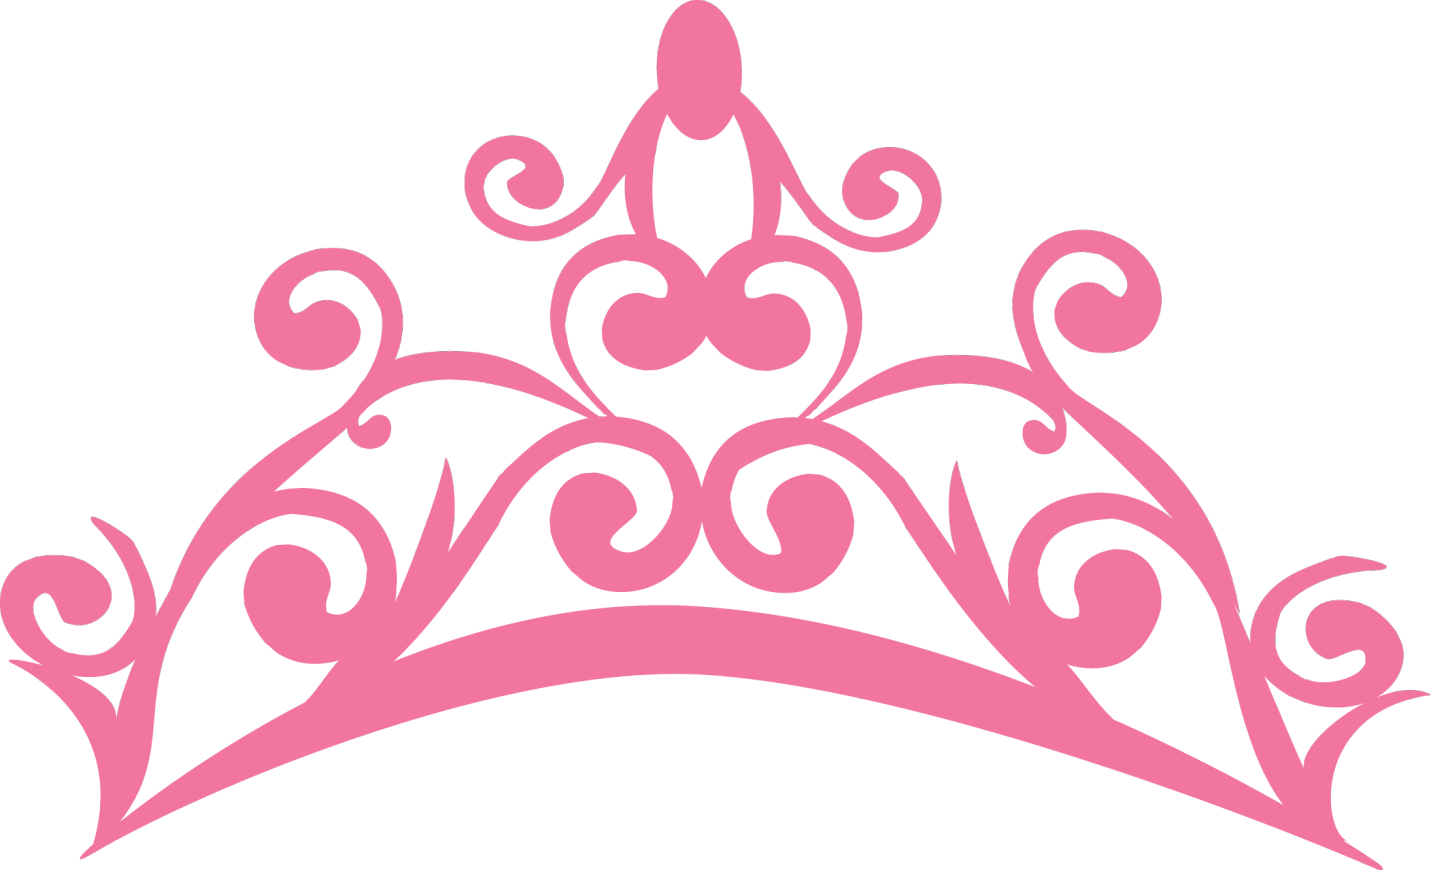 transparent princess crown png